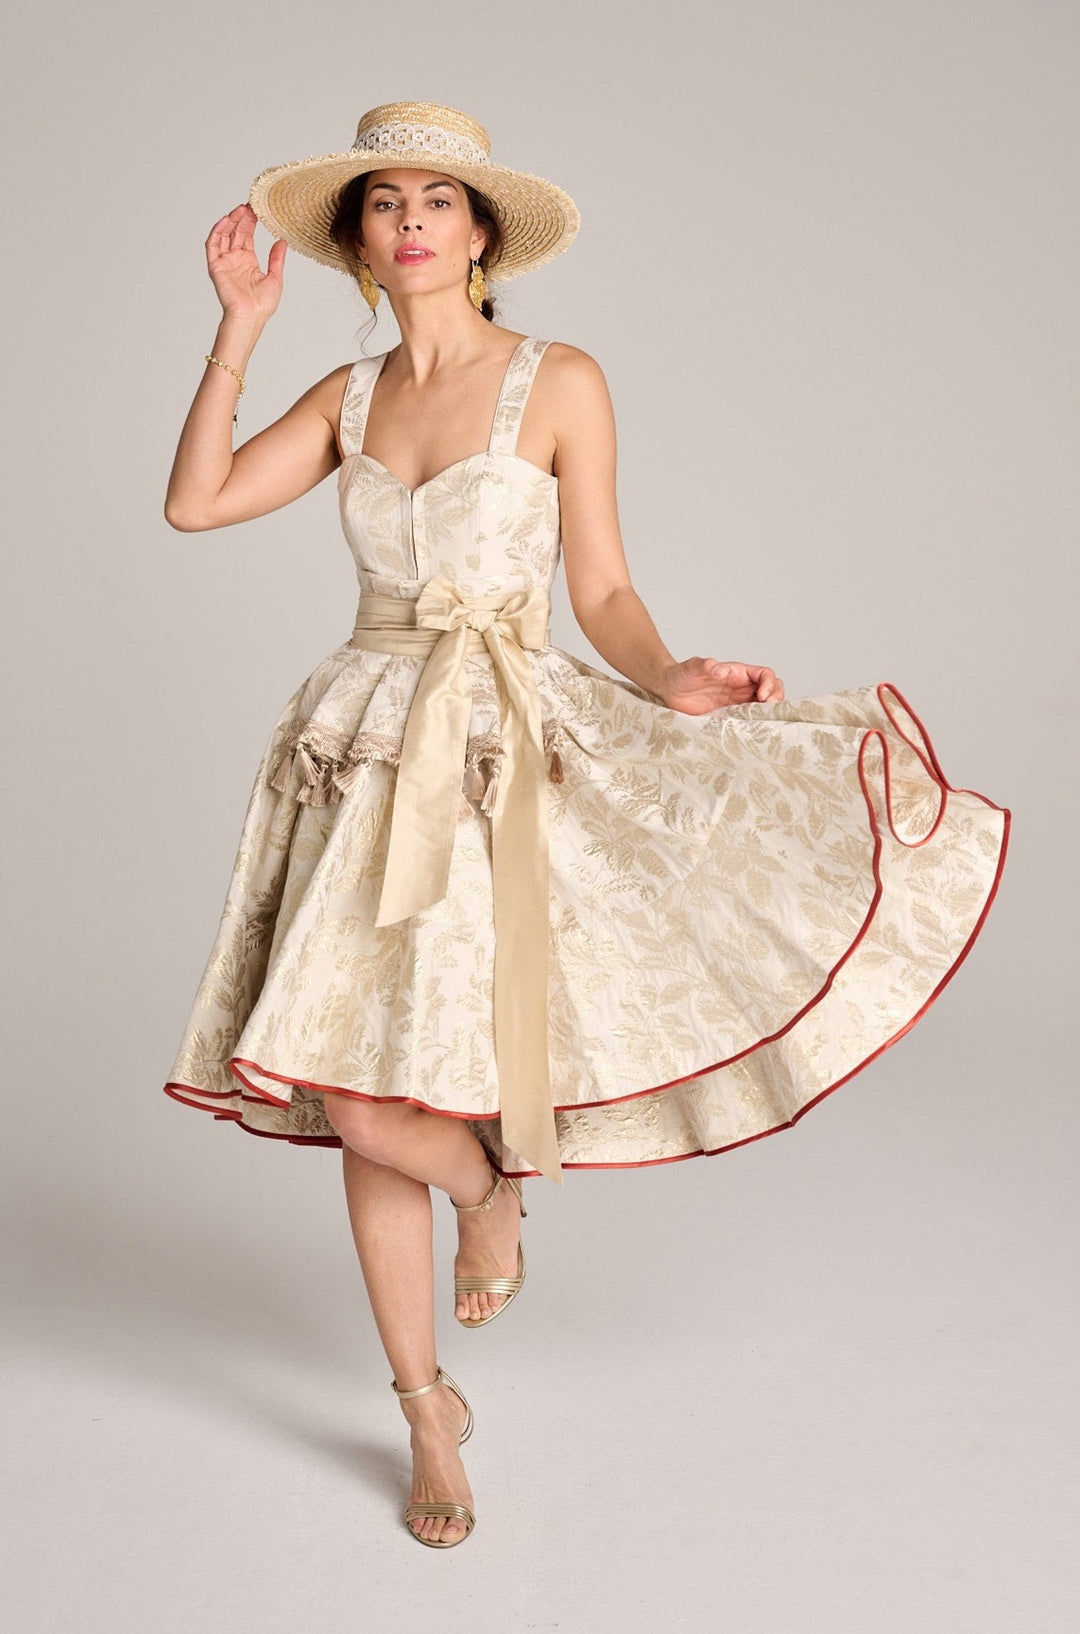 Ein elegantes Hochzeitsdirndl getragen von einer brünetten jungen Frau mit einem Strohhut und ohne Schürze